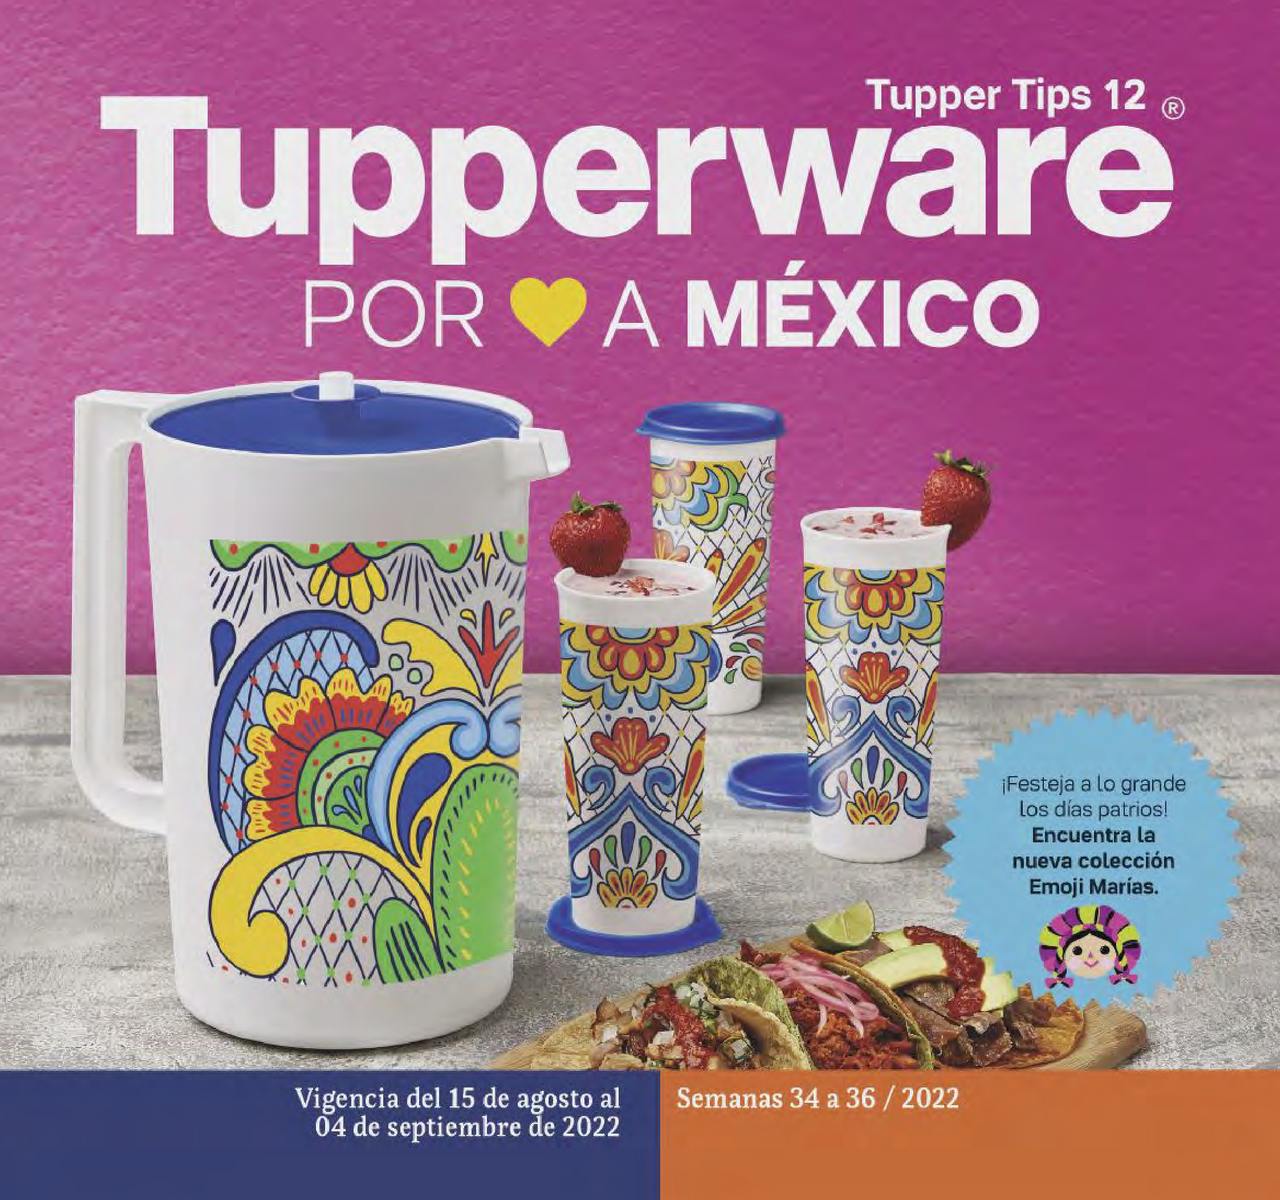 Catálogo Tupperware Tupper Tips 12 2022 México